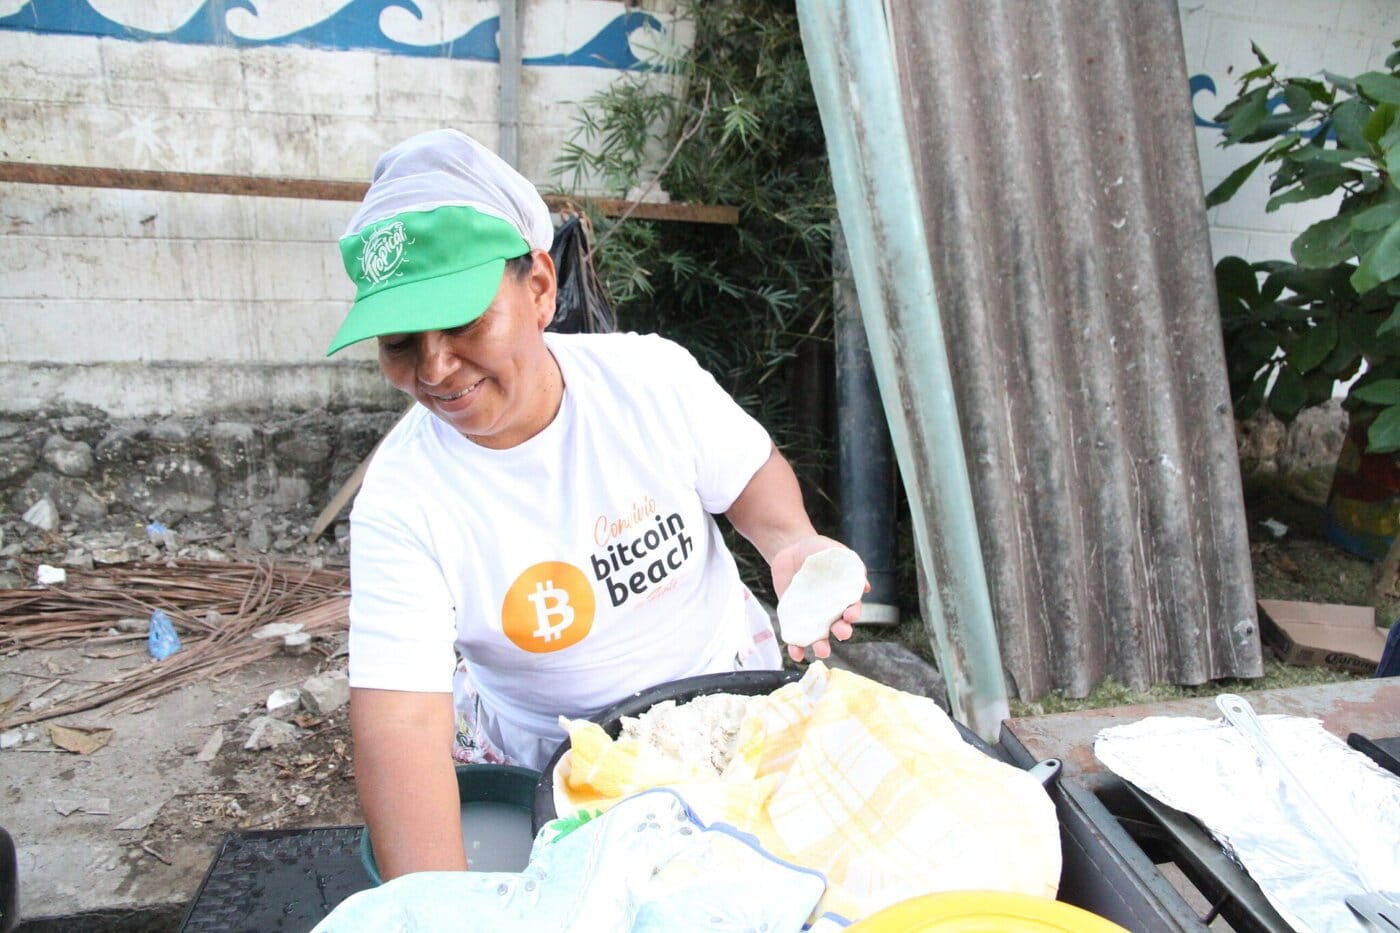 Buying pupusas in El Salvador with Bitcoin is easy.